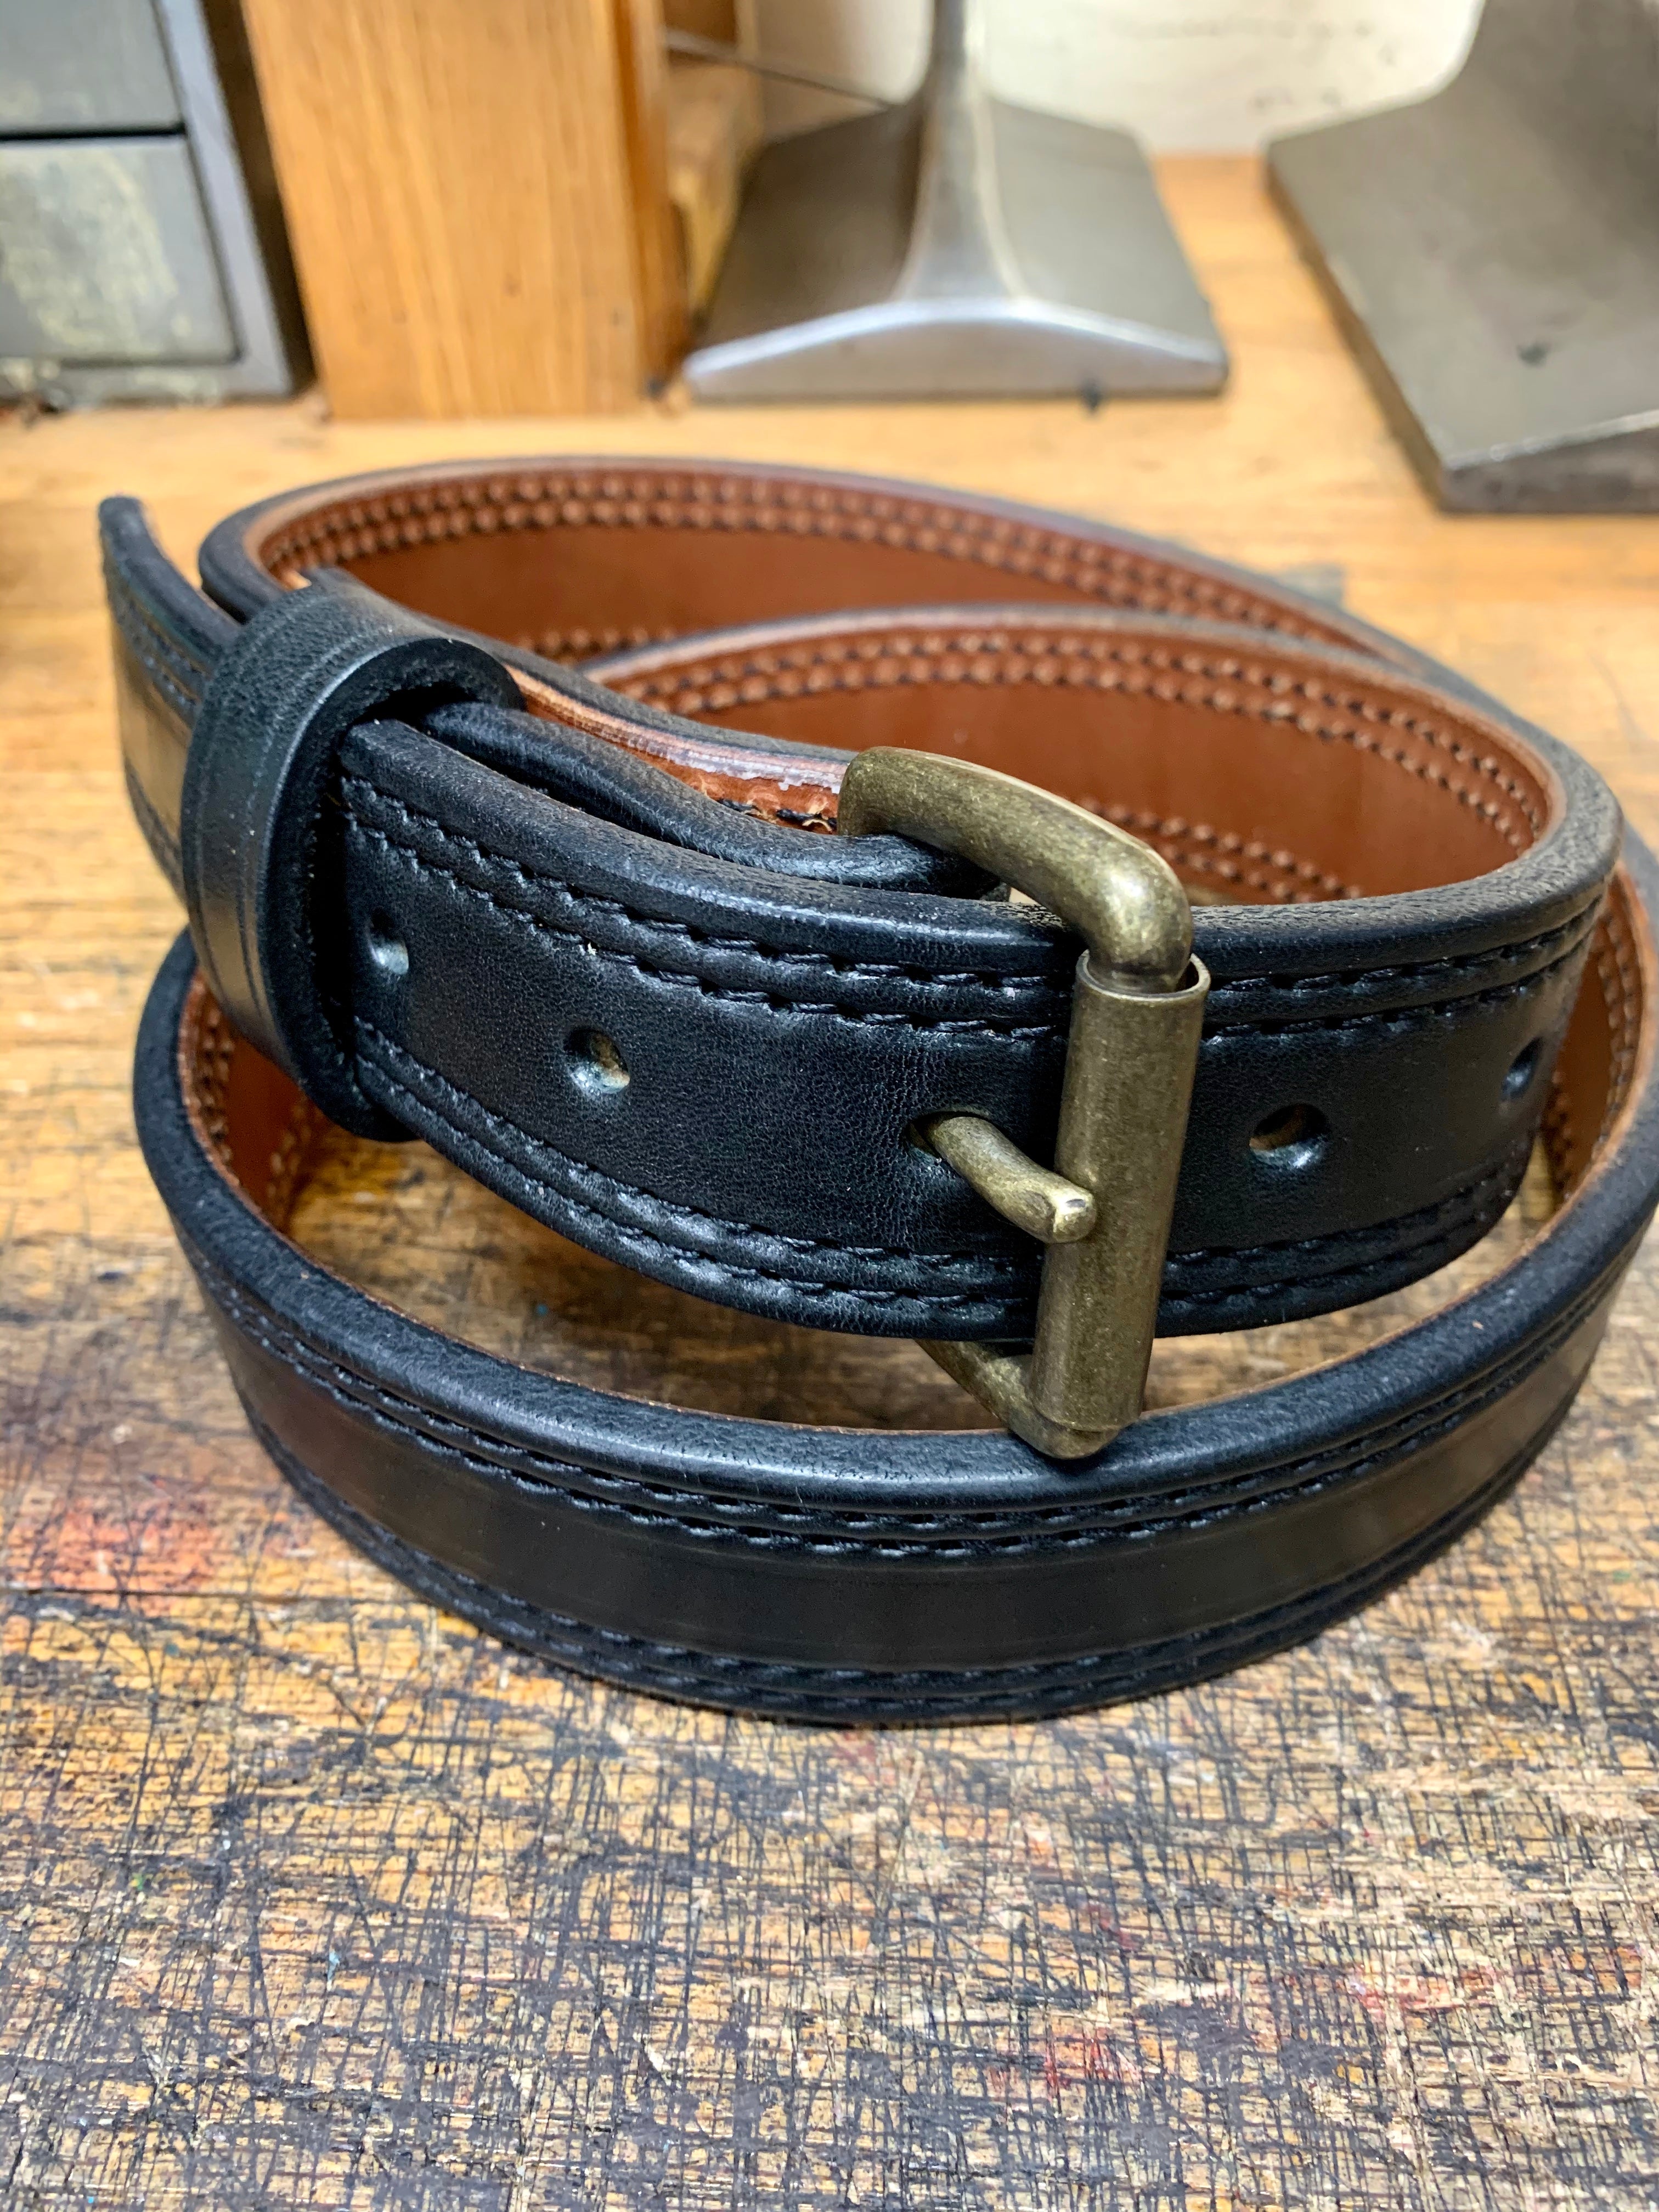 XW Leather Belt in Veg Tan (X-Wide 1.75) 40